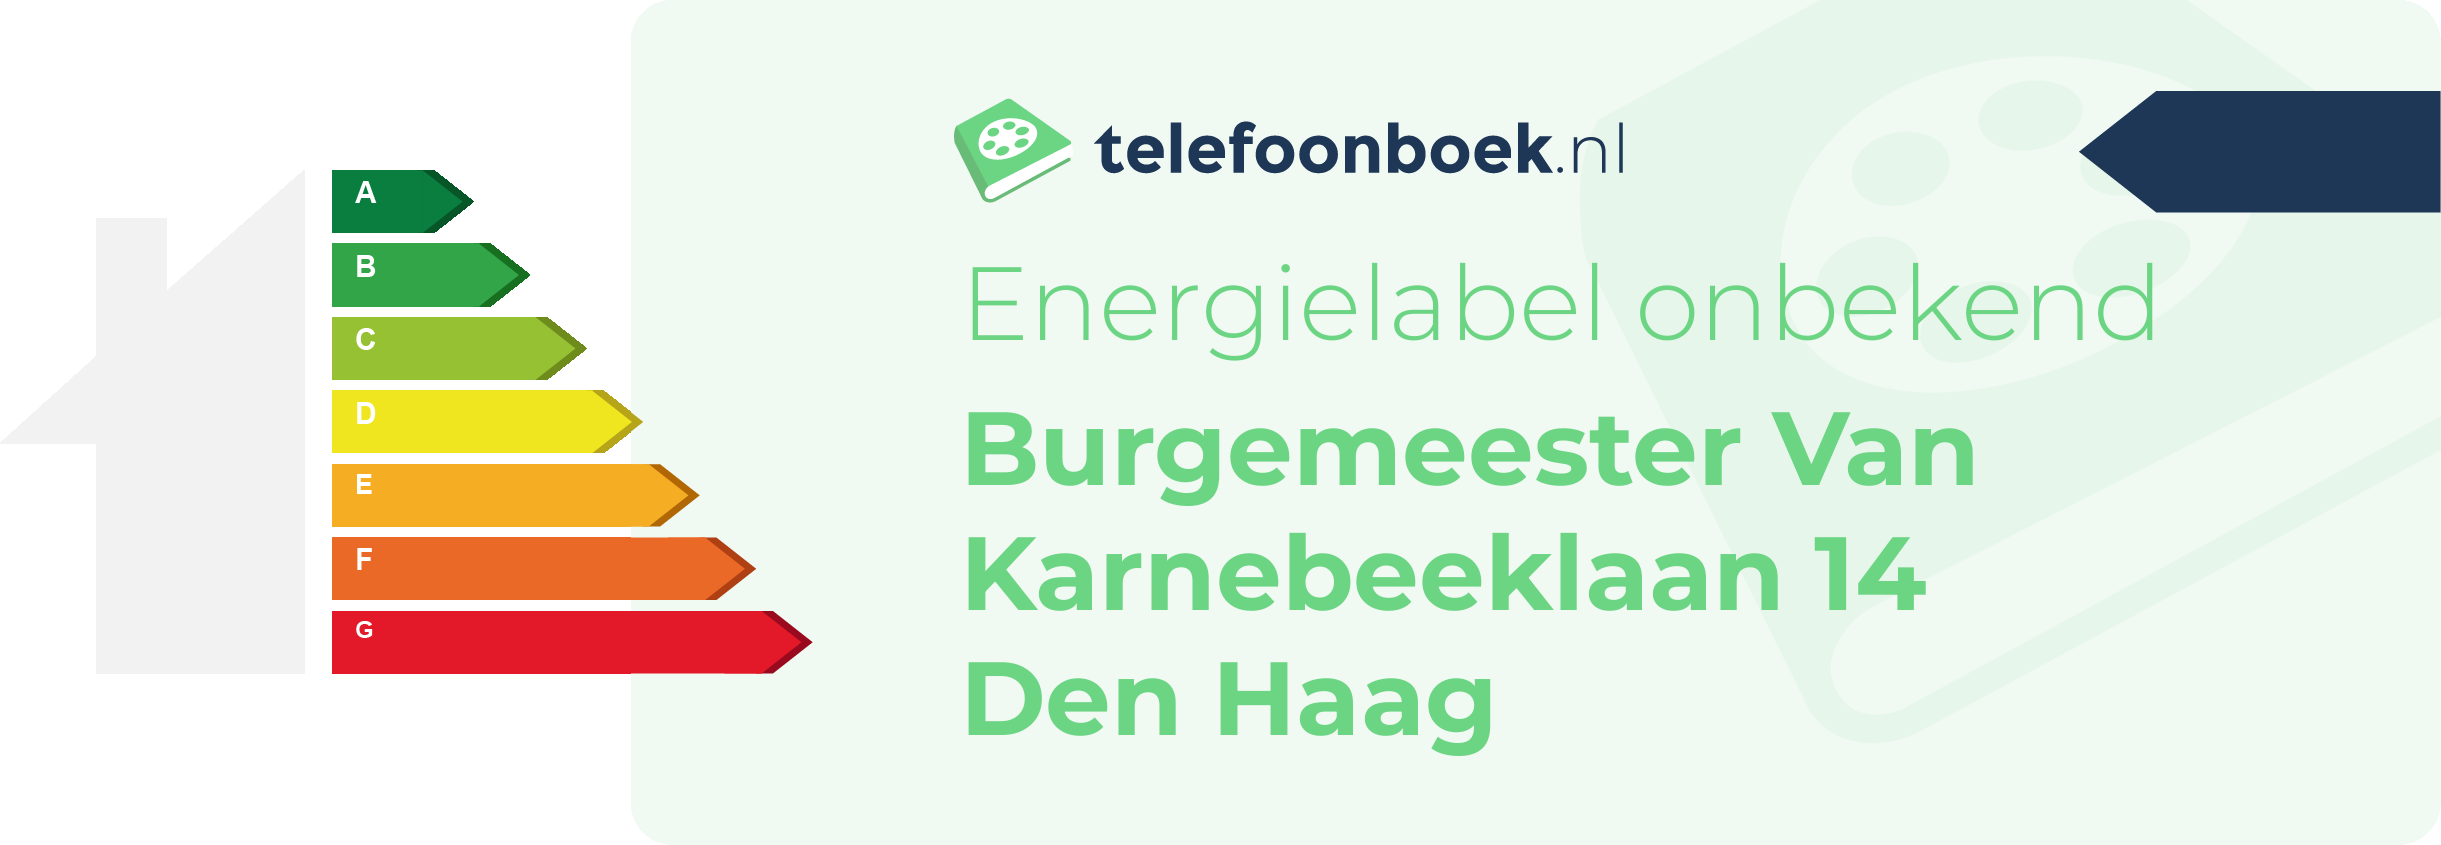 Energielabel Burgemeester Van Karnebeeklaan 14 Den Haag